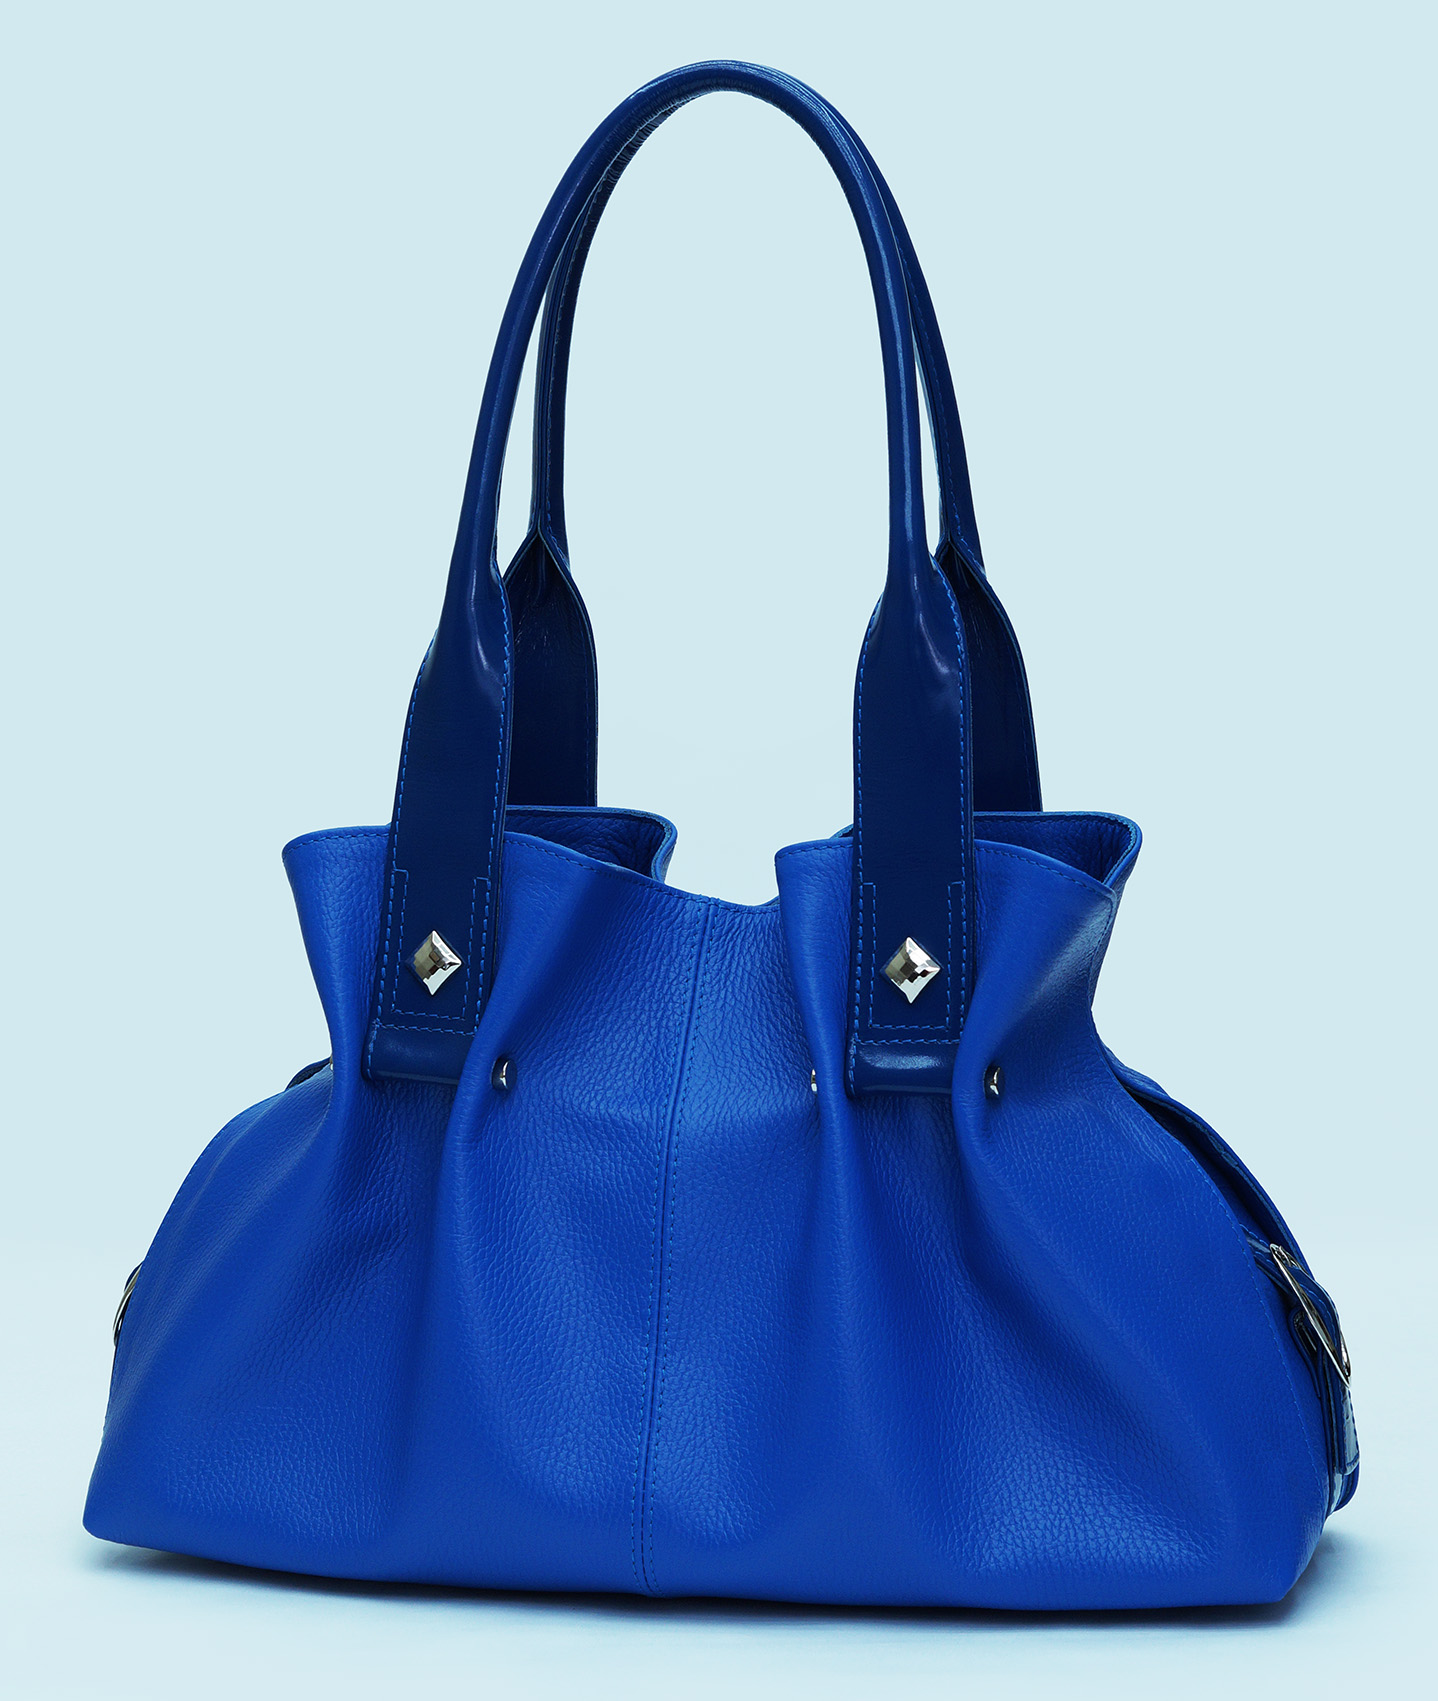 Купить голубую сумку женскую. Эконика синяя сумка. Сумка Эконика темно синяя женская. Голубая сумка Эконика 2021. Сумка женская 2335b8673 Blue.